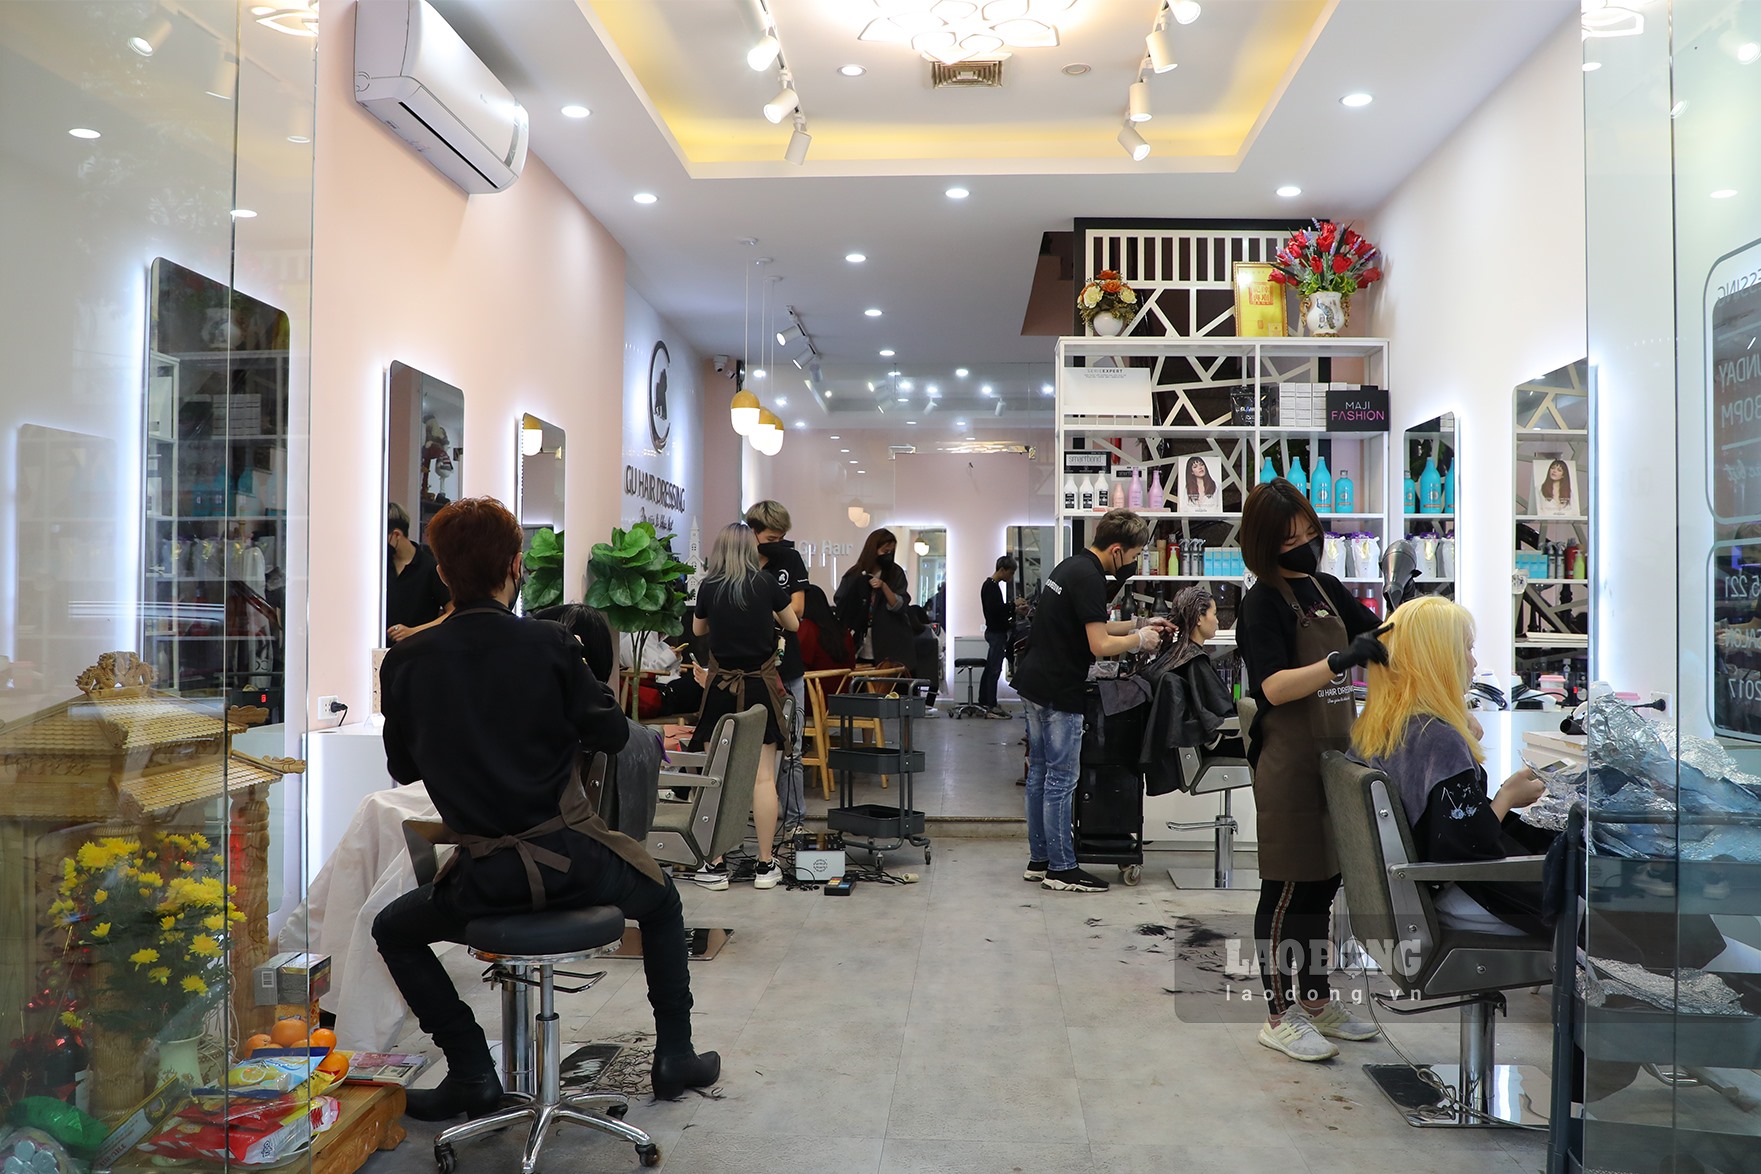 Chiều tối 22.4, Hà Nội quyết định cơ bản dừng cách ly xã hội (trừ một số huyện có nguy cơ cao) và cho một số cửa hàng được hoạt động trở lại. Sau 3 tuần cách ly, nhiều người dân có nhu cầu cắt tóc